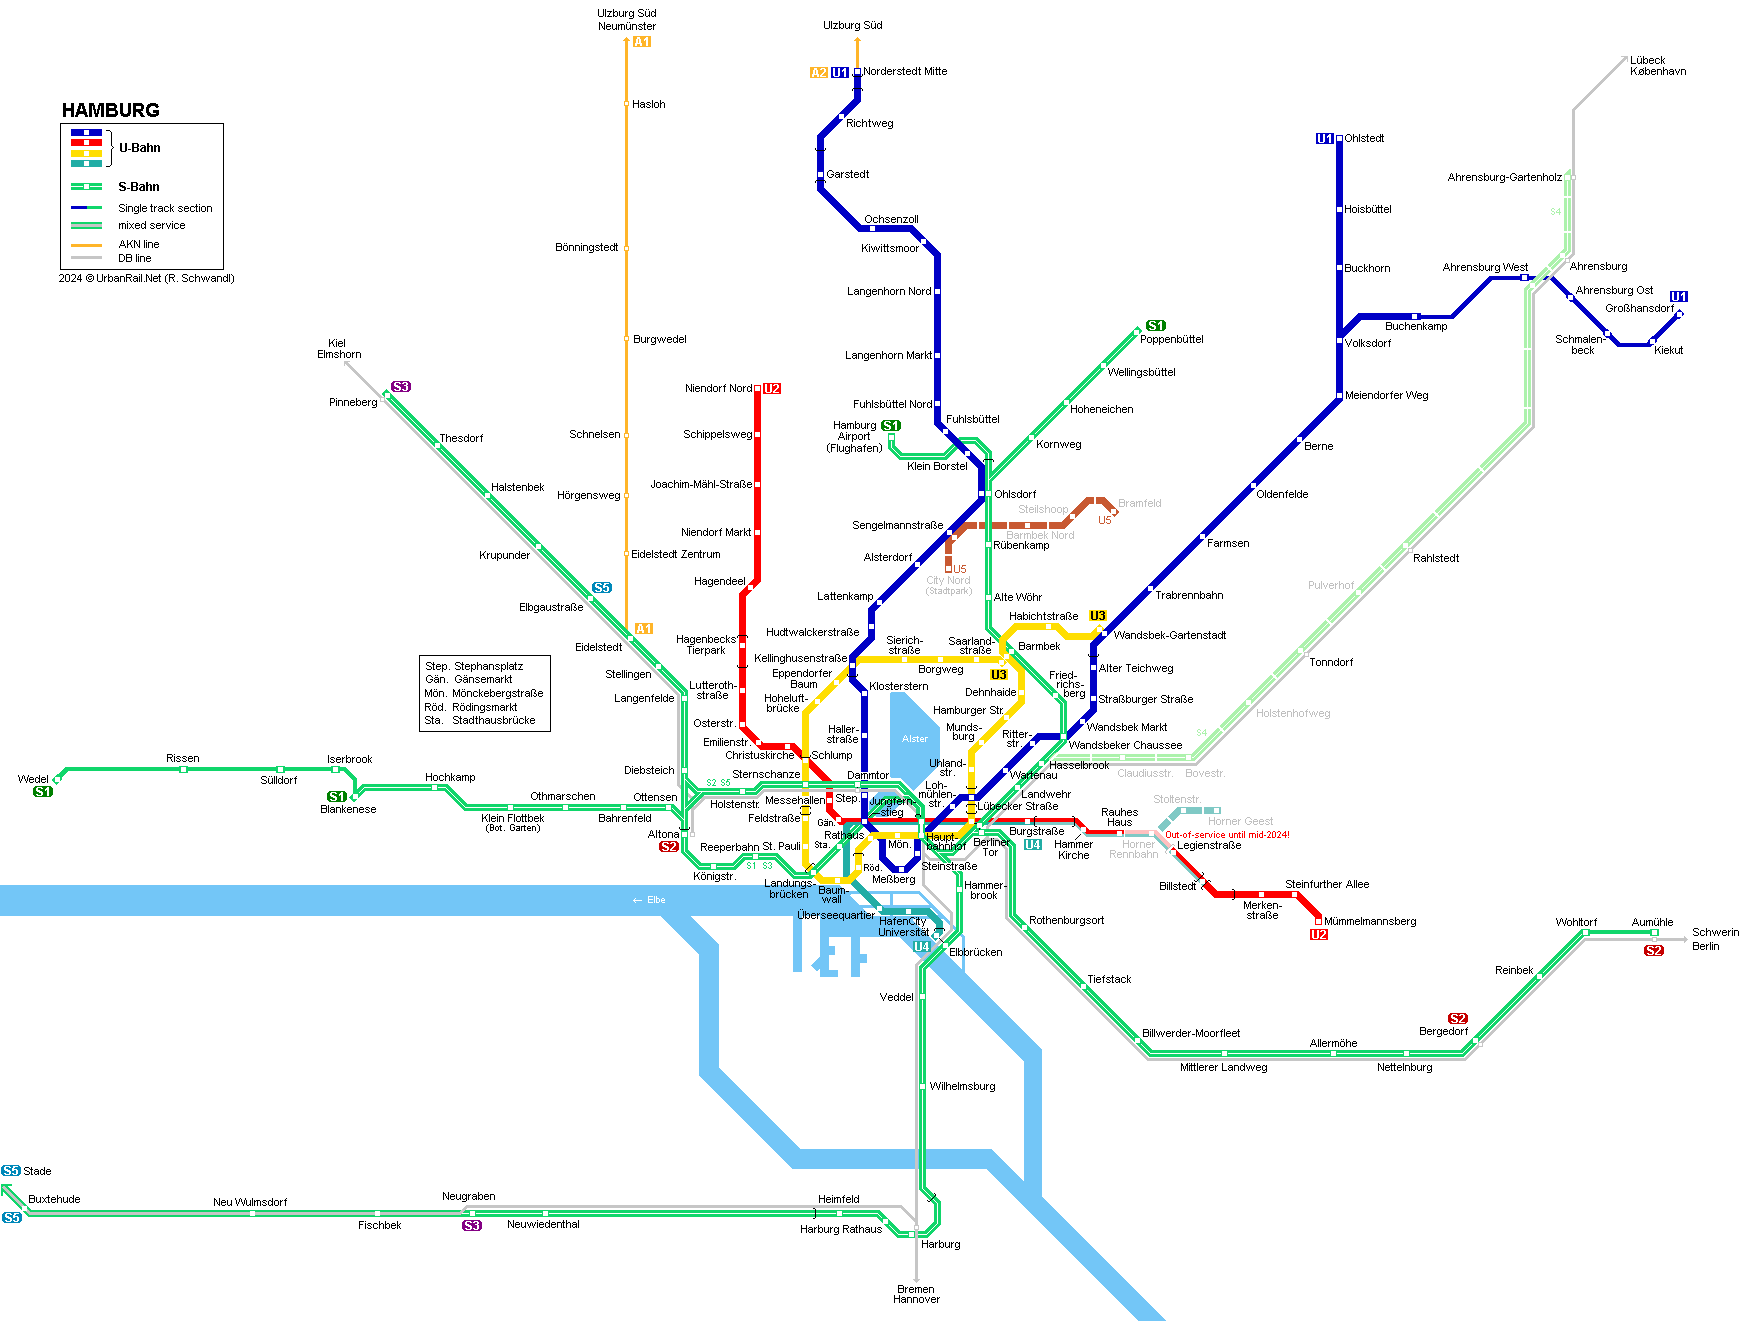 Hamburg U-Bahn & S-Bahn map